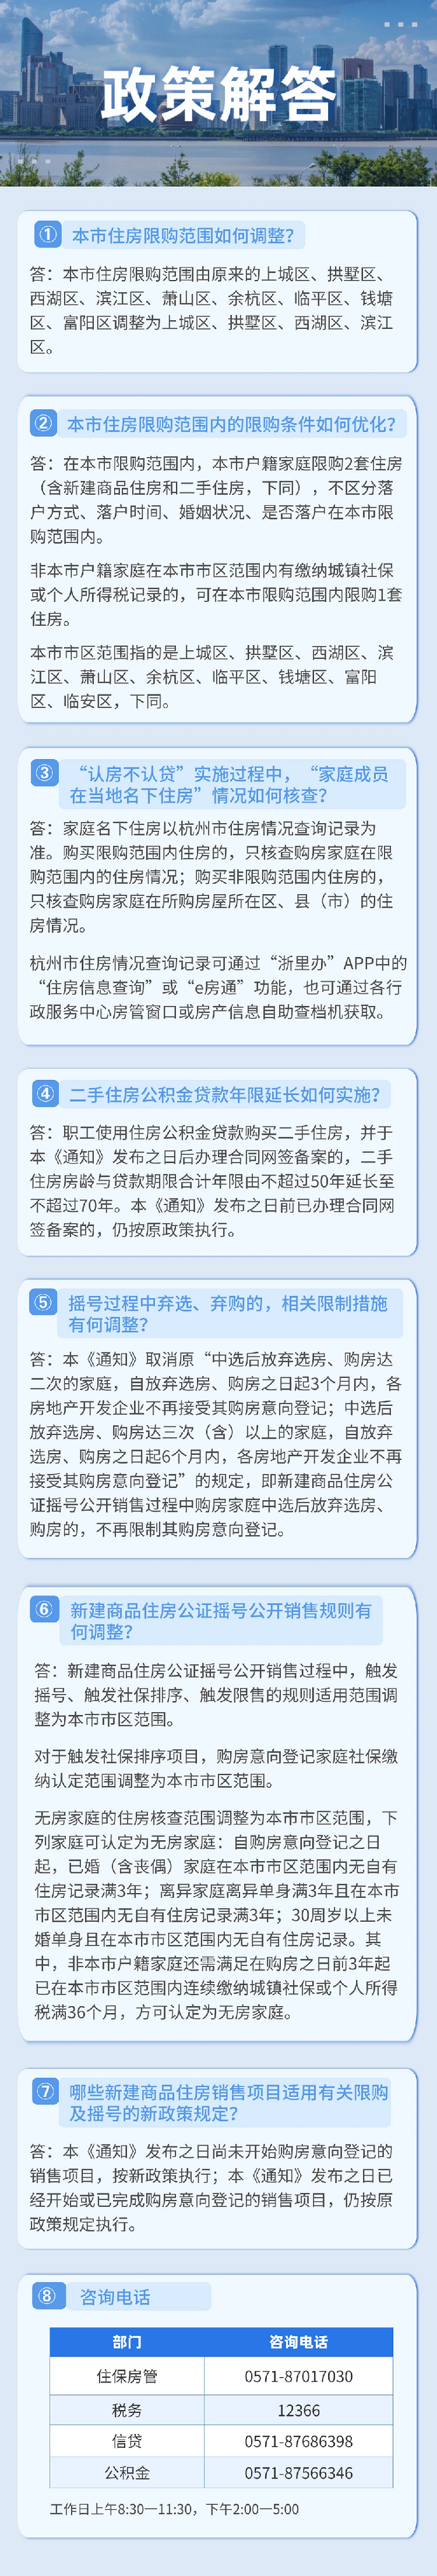 限购范围调整 杭州优化调整房地产市场调控措施